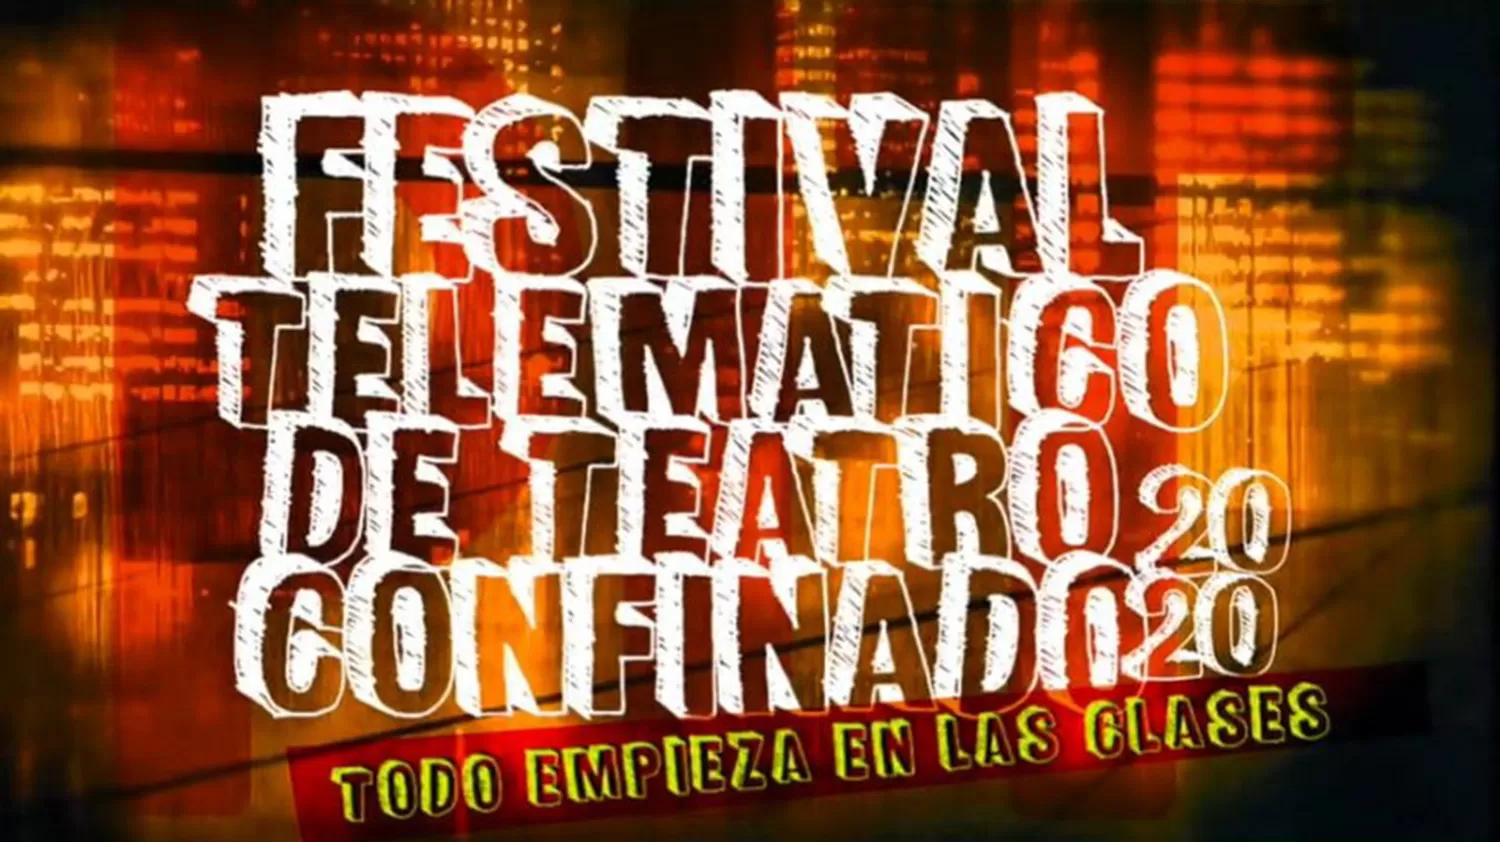 Festival: teatro confinado